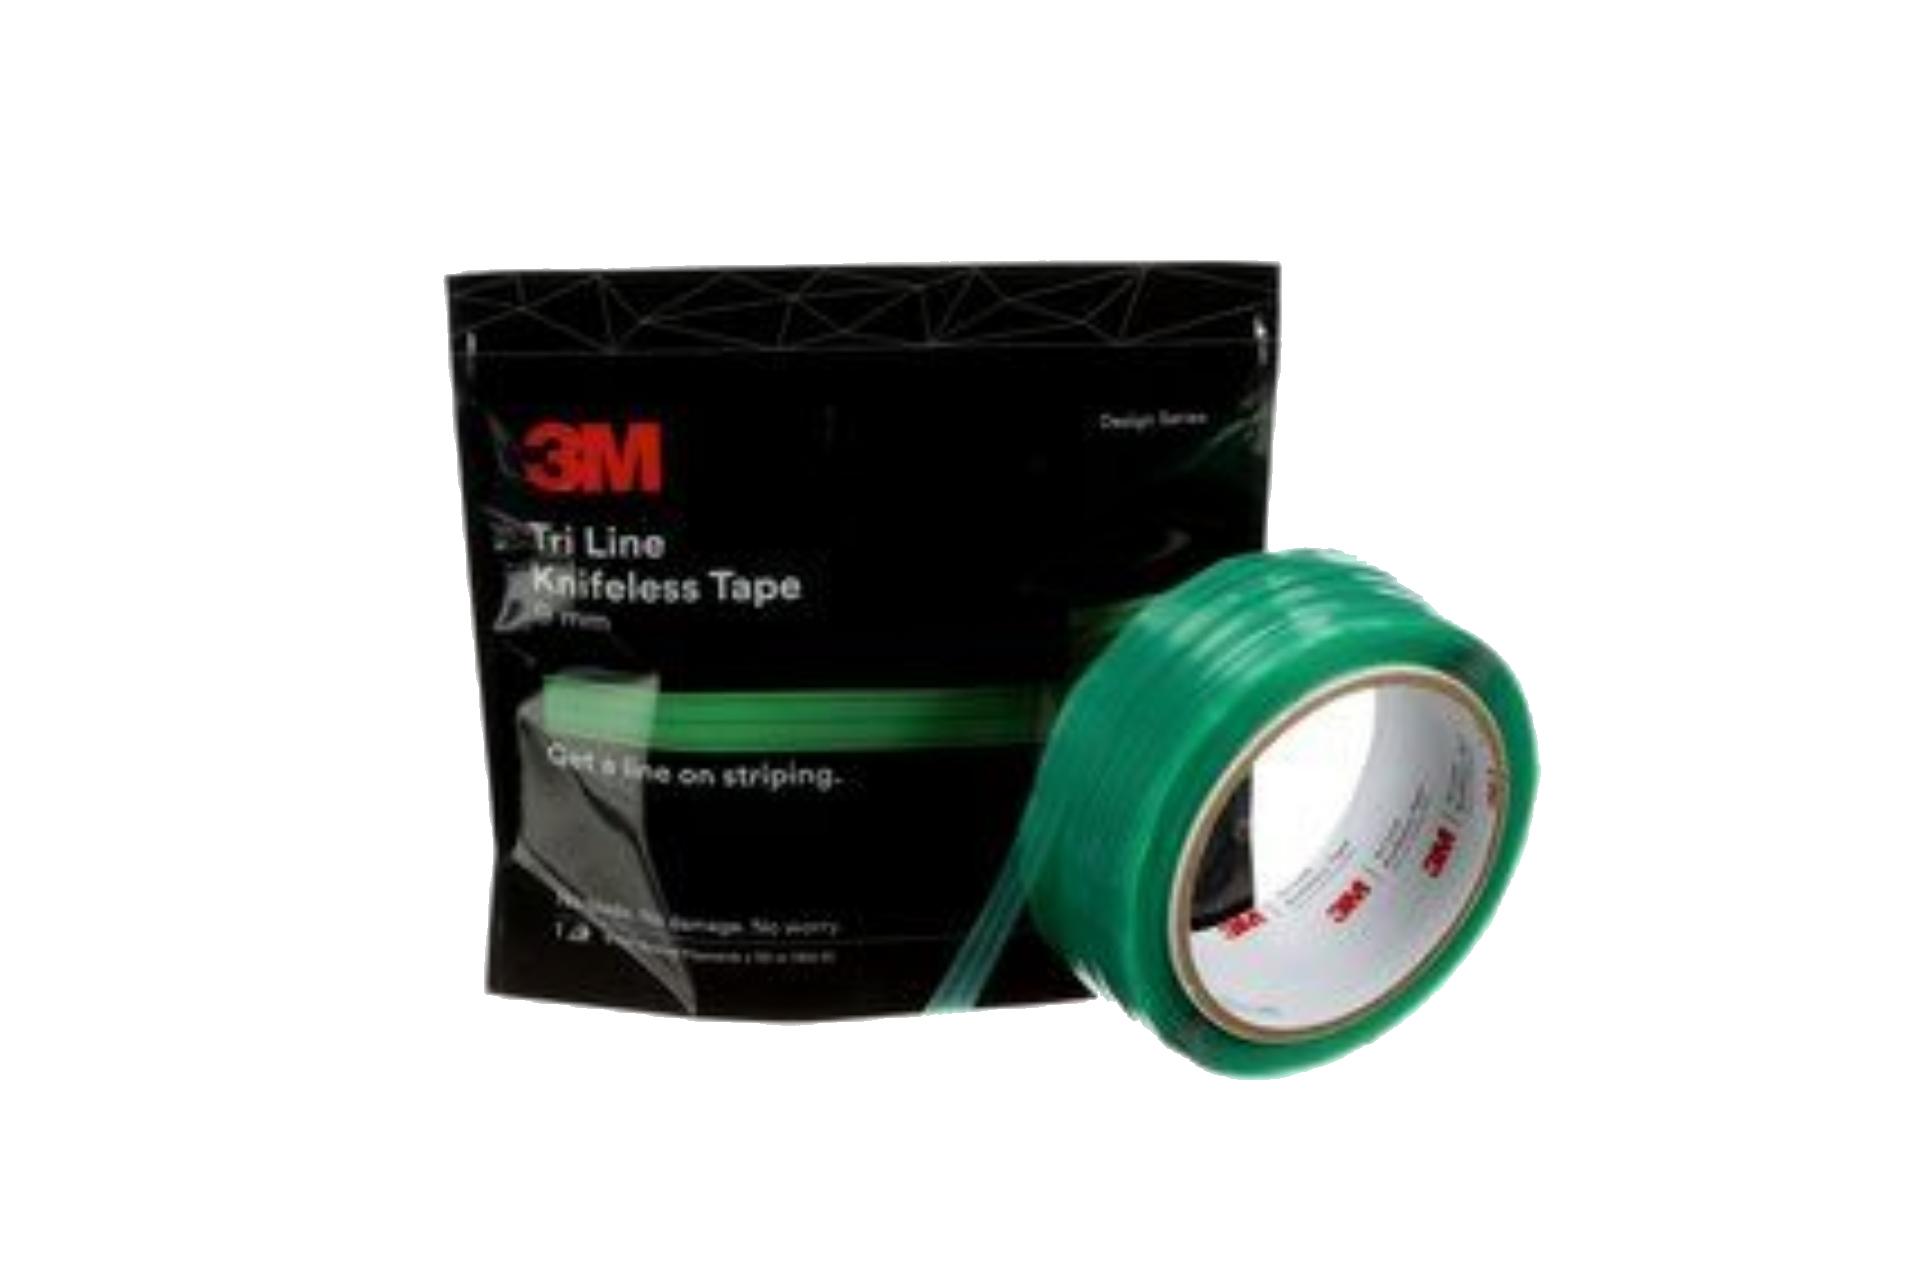 Foto: 3M Knifeless Tri Line Tape - 6 mm x 50 m